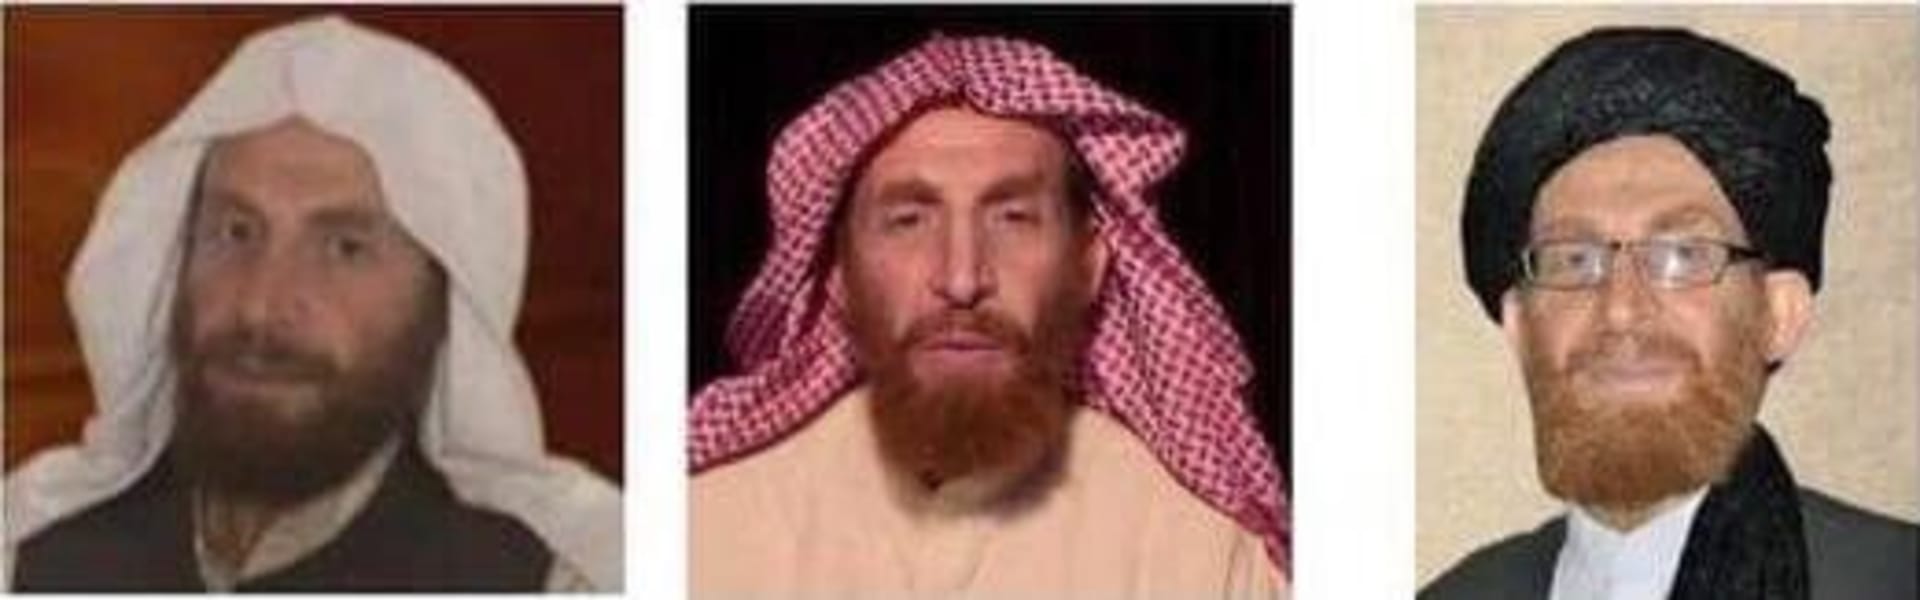 Abú Muhsín Masrí figuroval na seznamu nejhledanějších teroristů 